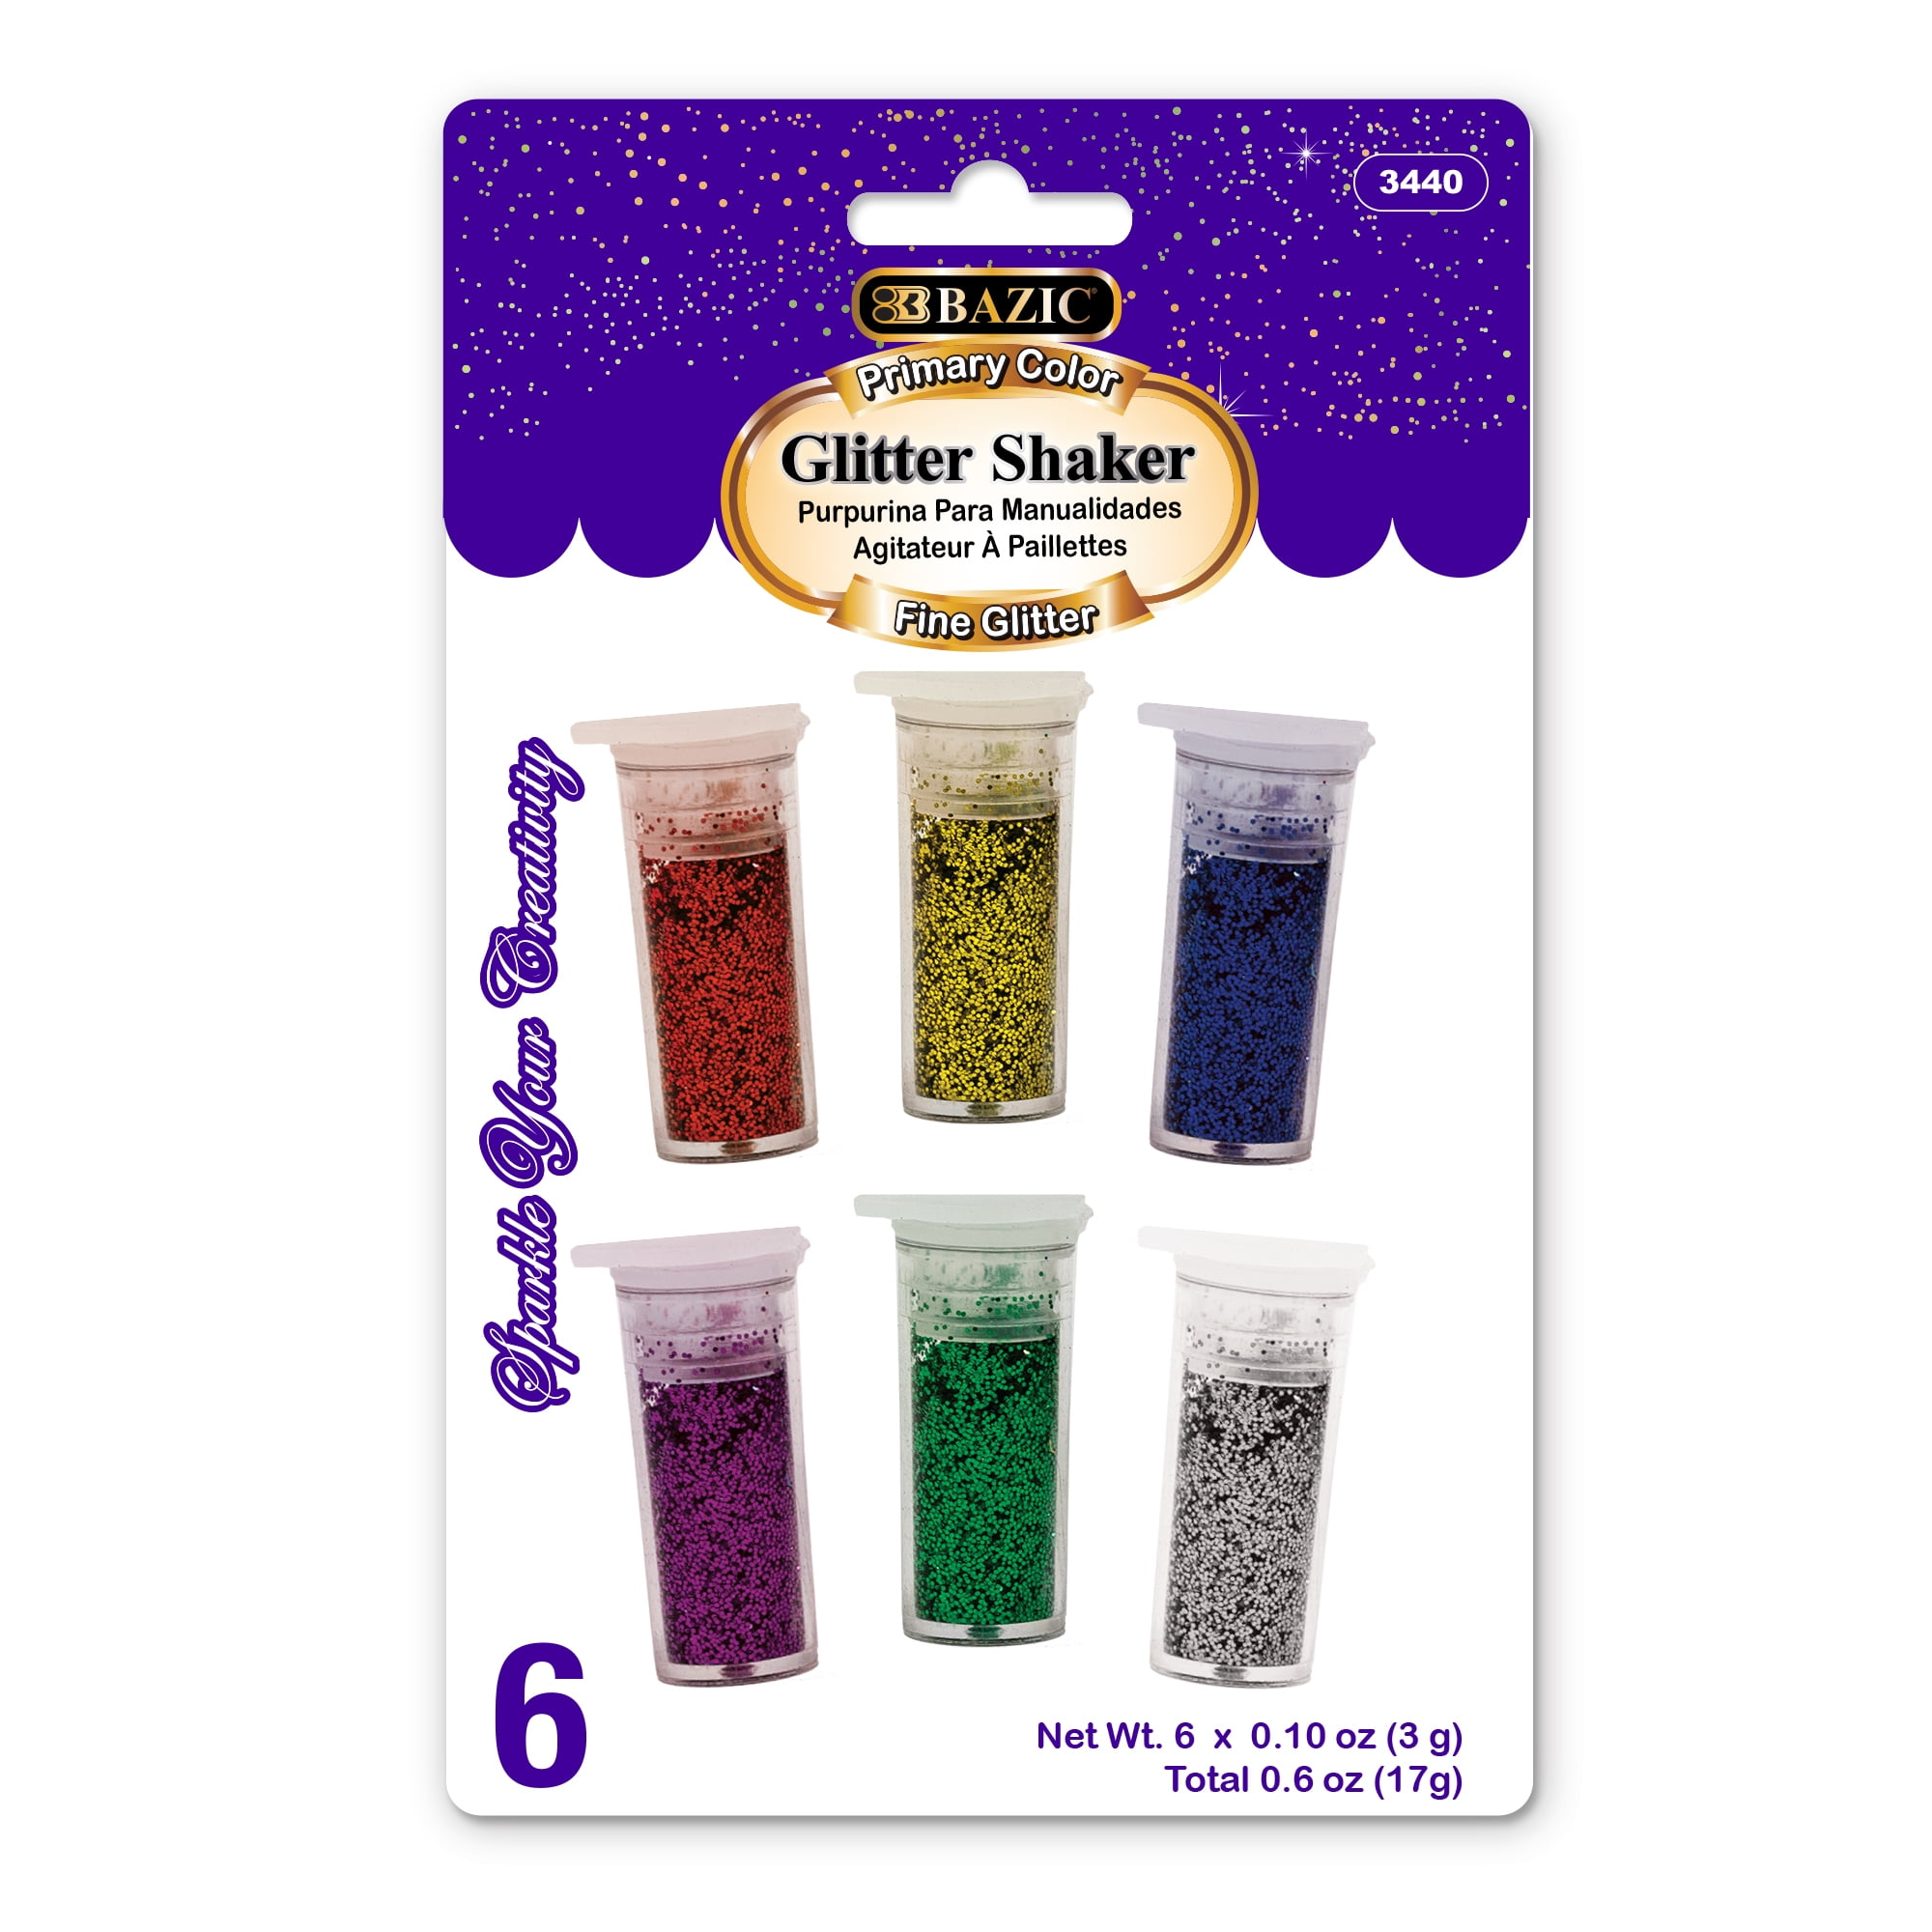 5.5 oz each Empty Glitter Shaker